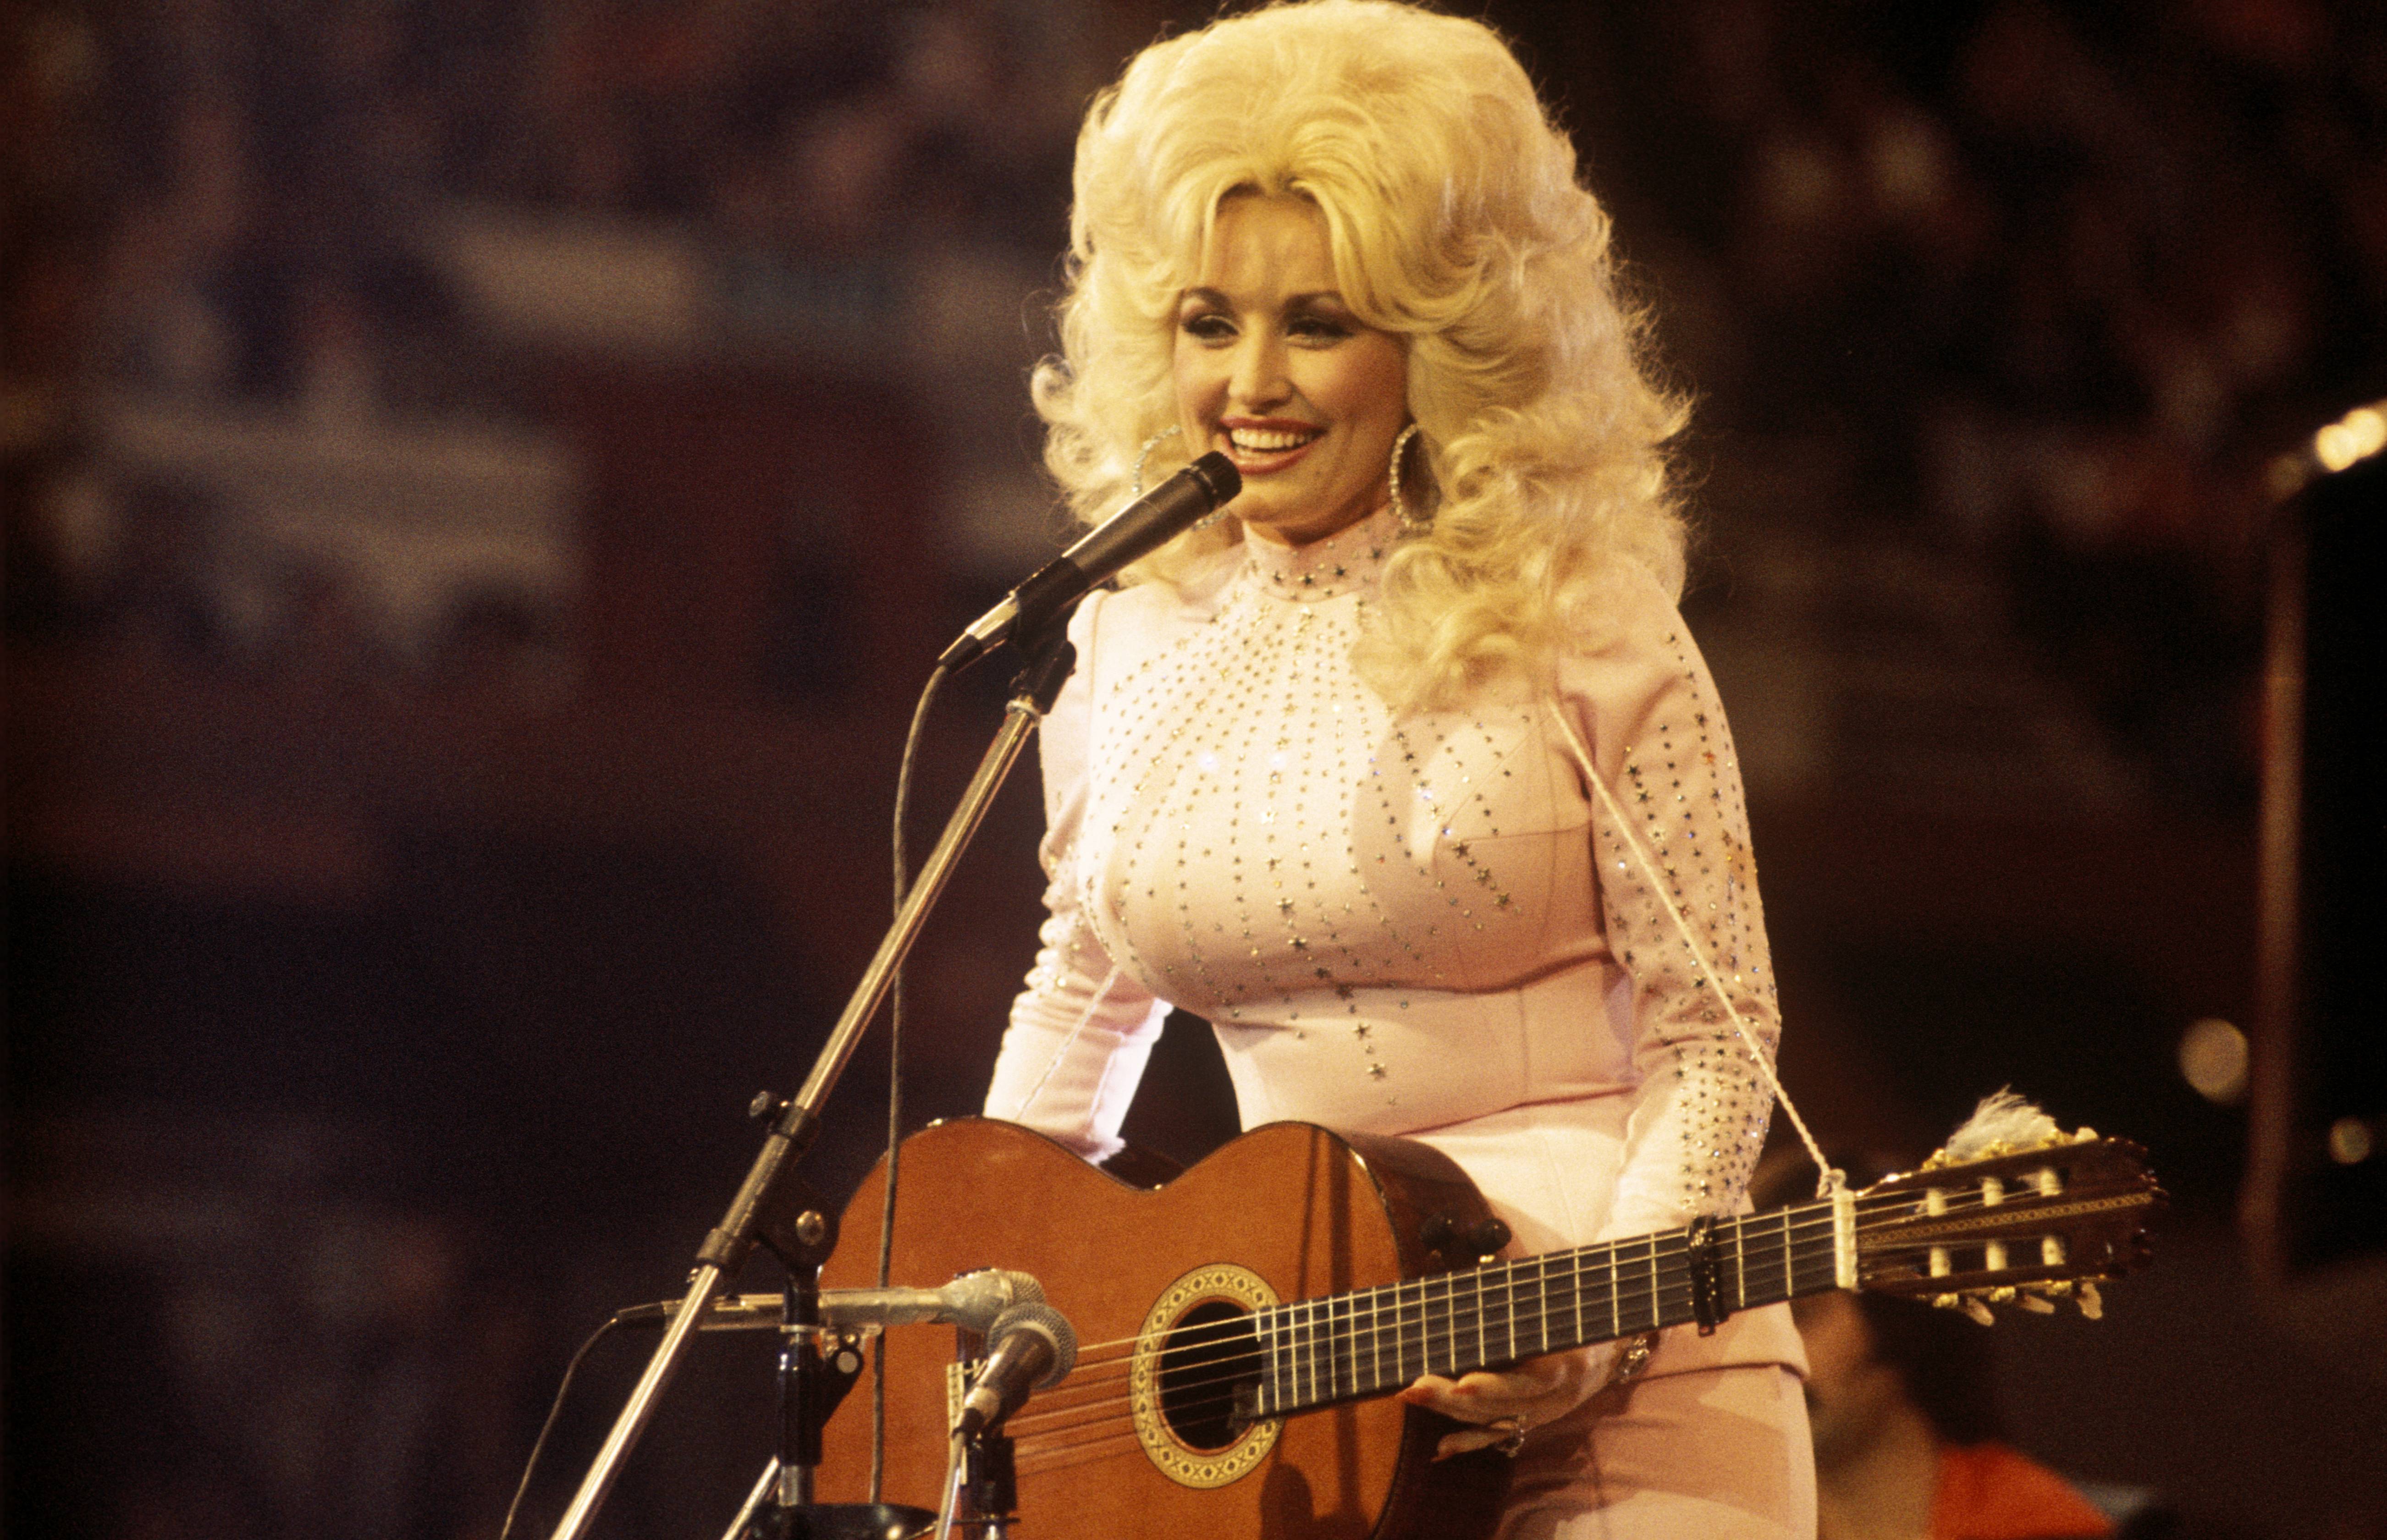 Dolly Parton đã giúp đỡ bà nội 'không hợp lệ' của cô ấy khi không có đứa cháu nào khác muốn—bà ấy cũng chơi khăm bà ấy